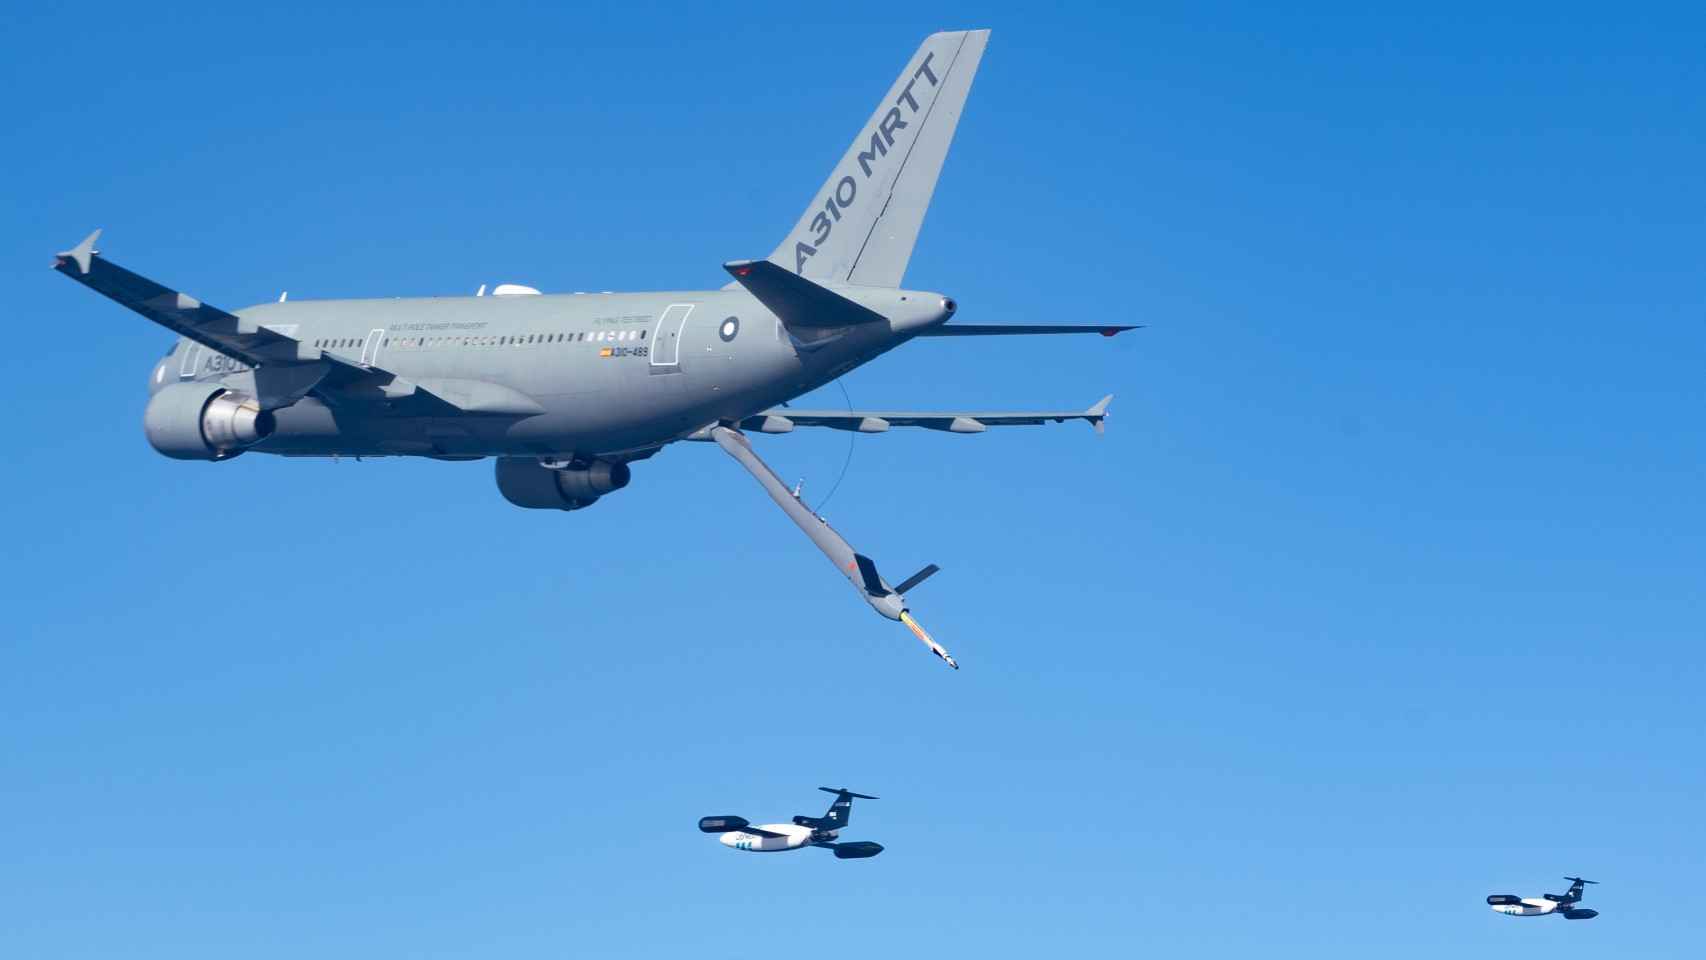 L’invention espagnole selon laquelle les avions militaires peuvent se ravitailler en vol sans intervention humaine